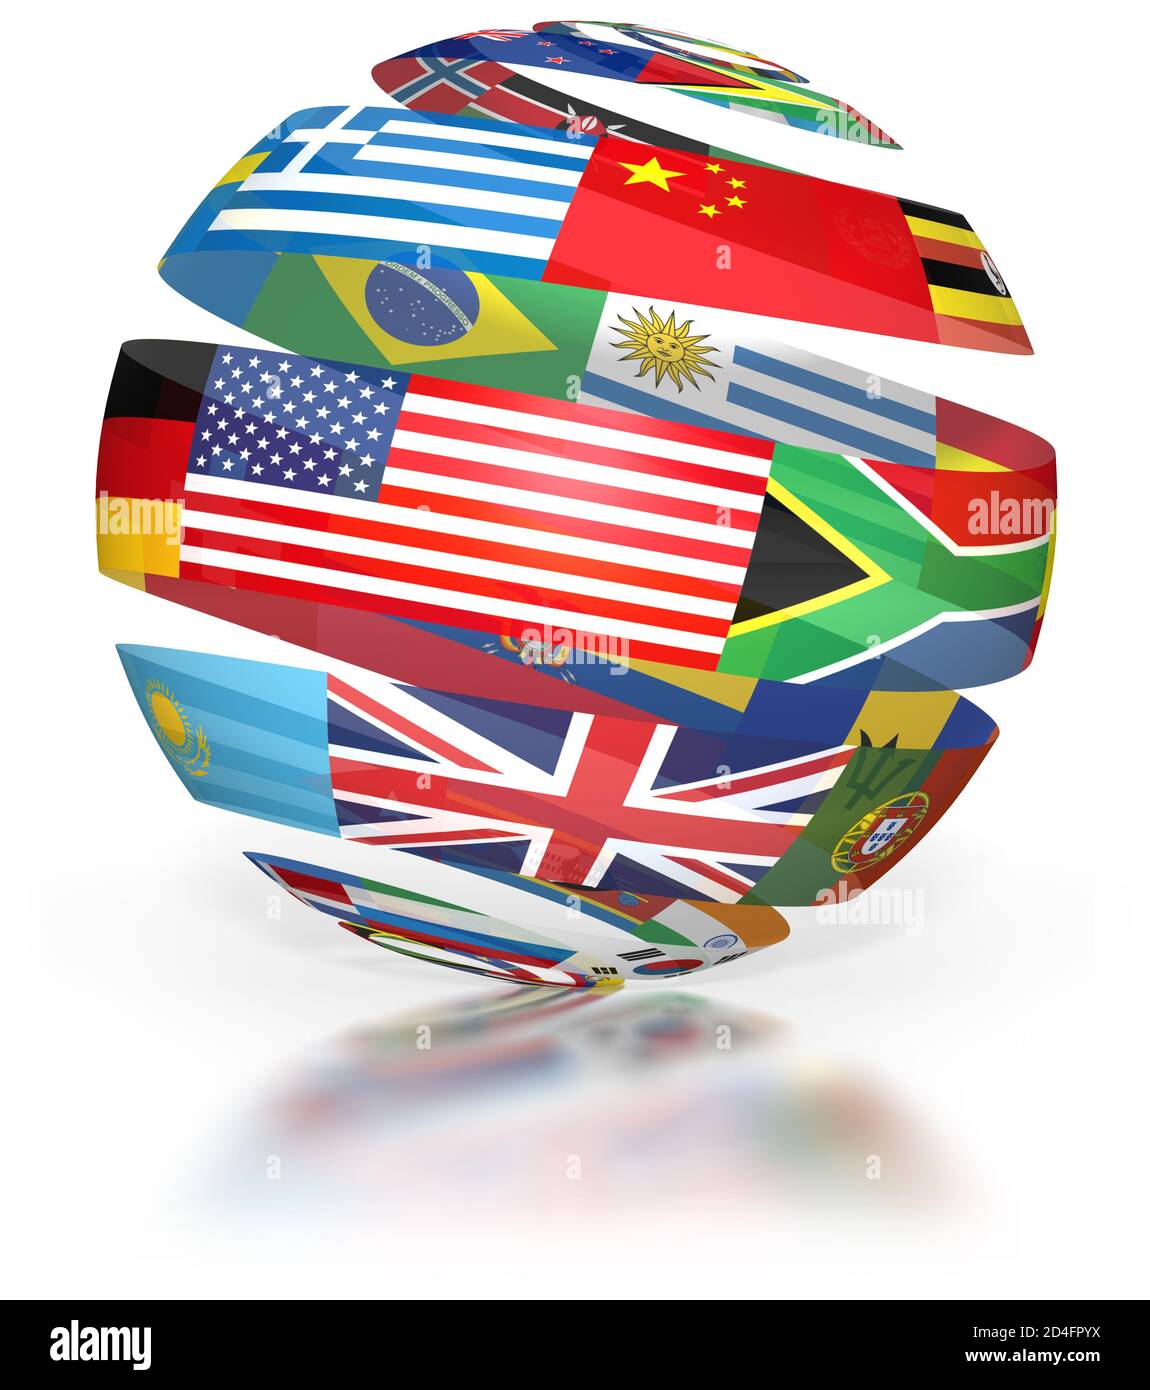 Globo di bandiere del mondo, spirale che mostra i simboli internazionali, nastro sfondo bianco Foto Stock